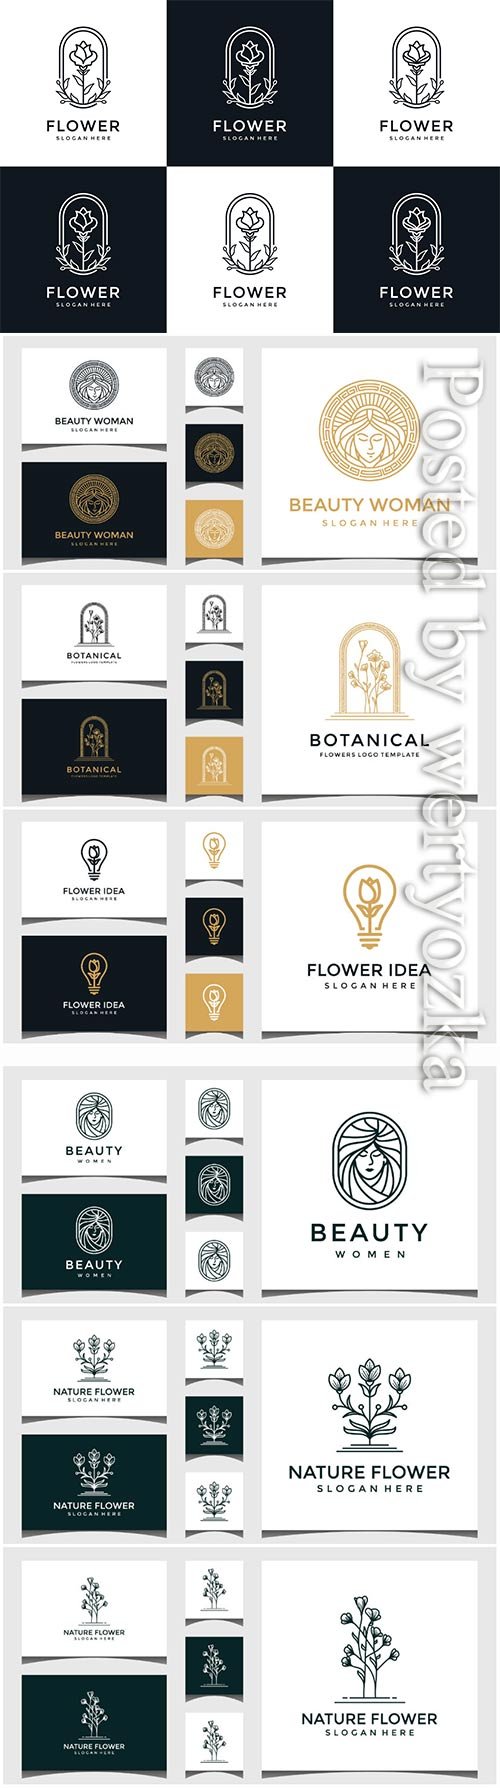 Set of flower logo design in line art style